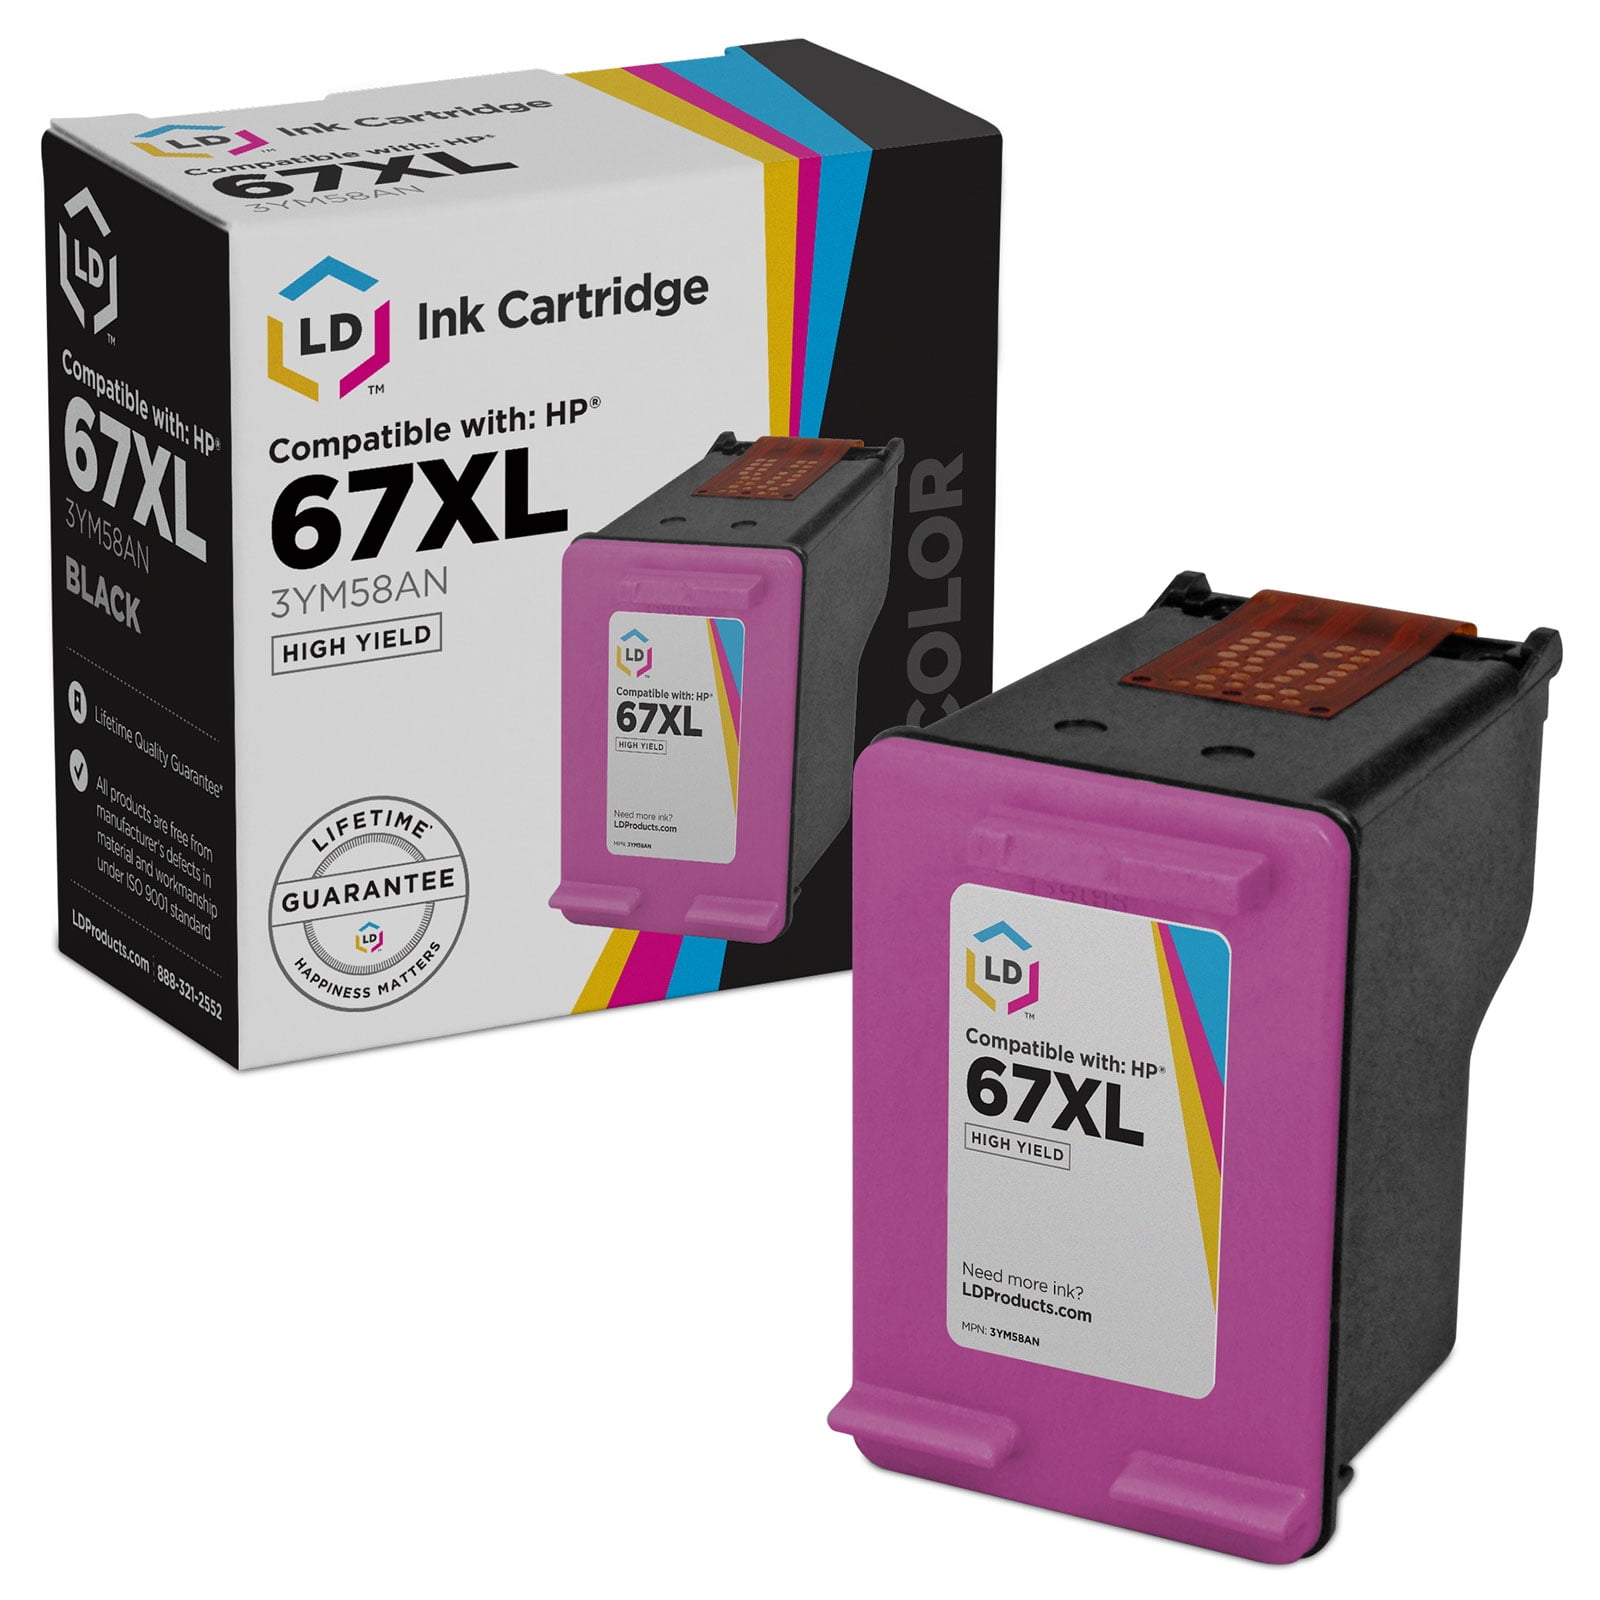 Lexmark Genuine 200XL B C M Y Ink Cartridges Pro 4000 5000 5500 